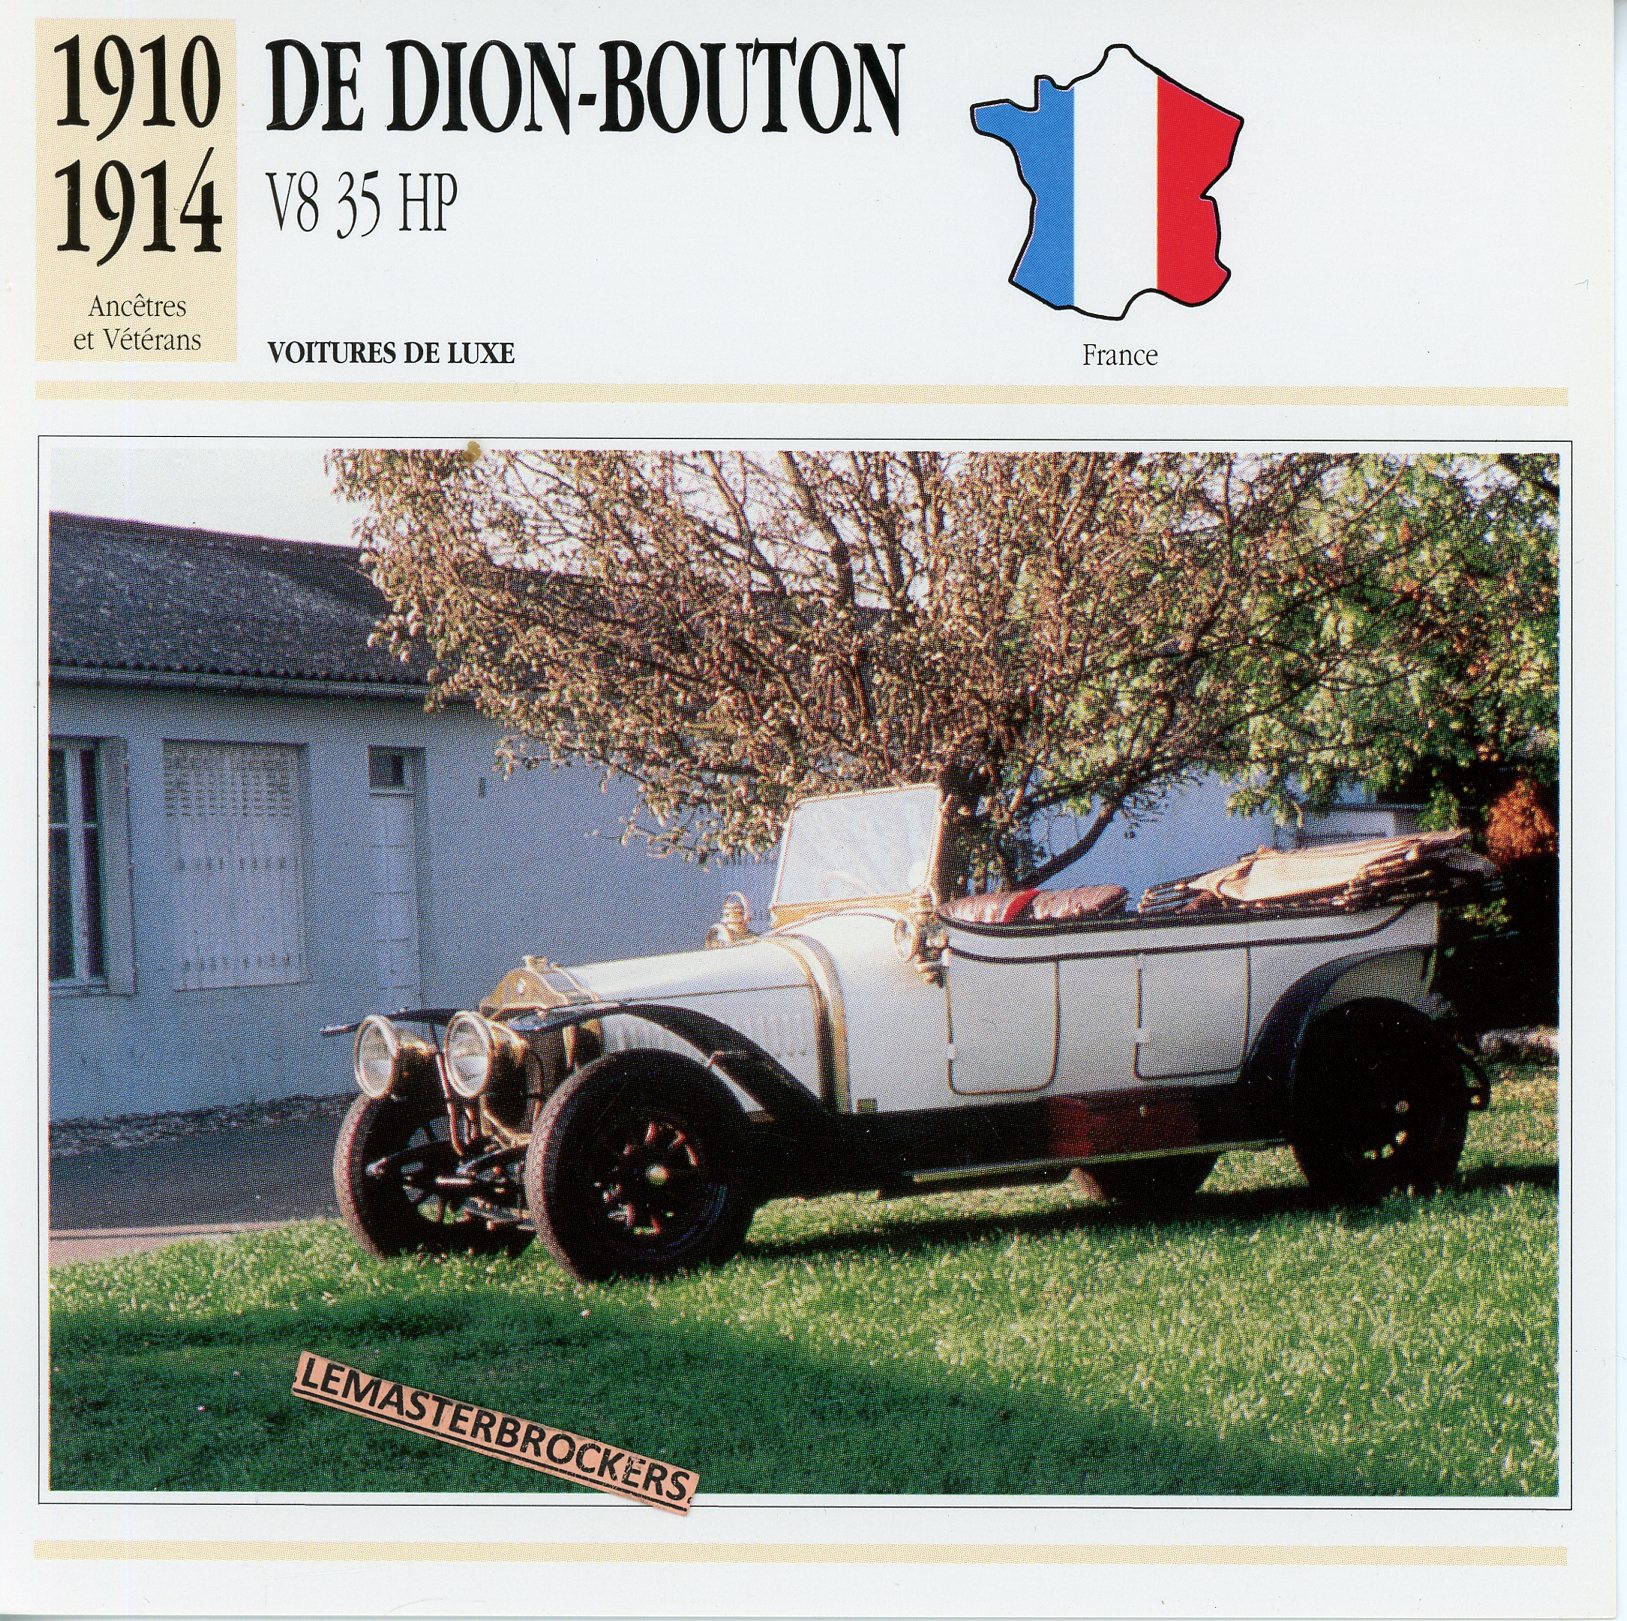 DE-DION-BOUTON-V8-35HP-FICHE-AUTO-ATLAS-LEMASTERBROCKERS